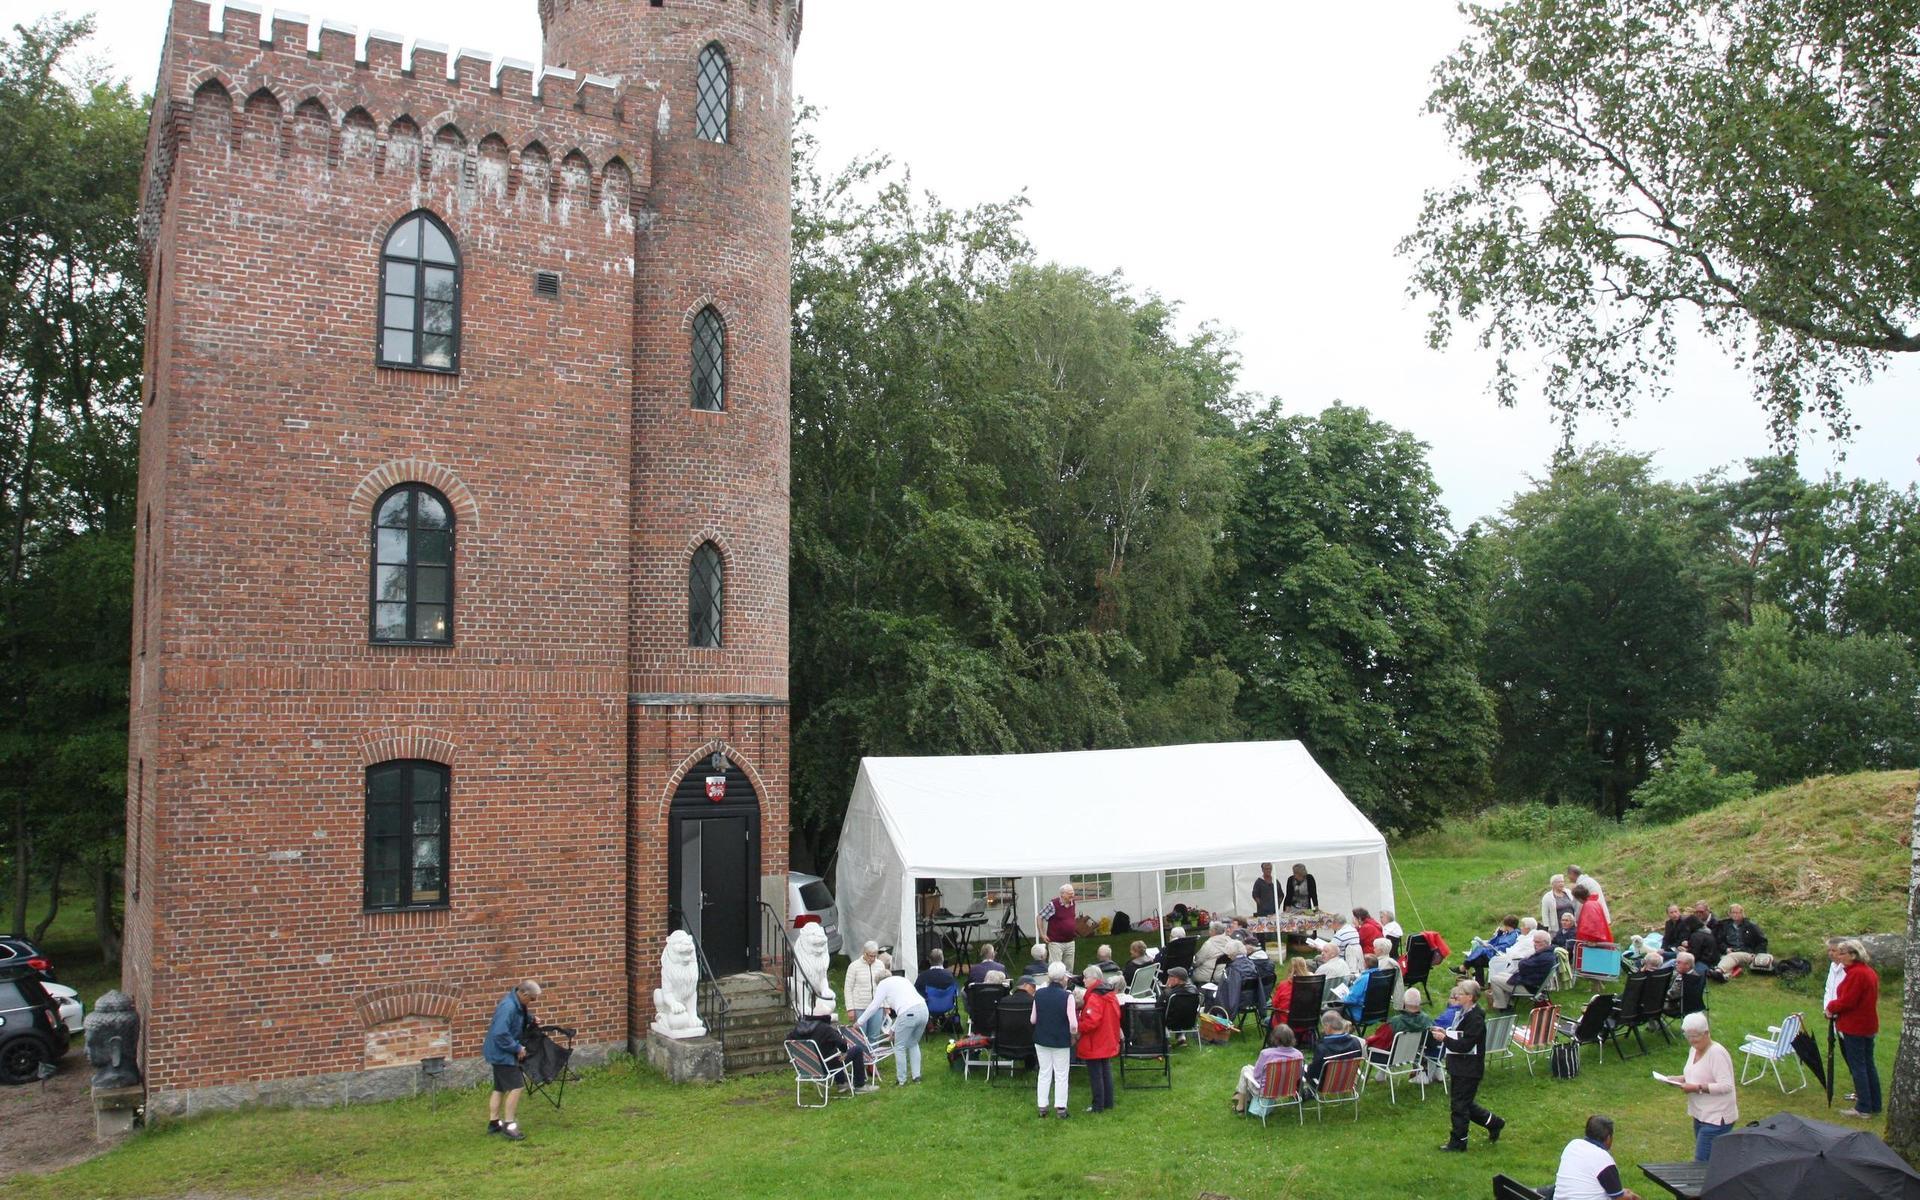 Nebotornet är ett landmärke i Veinge och har även fungerat som samlingsplats för olika evenemang. som här när SPF Veinge-Tjärby anordnade allsång 2017.